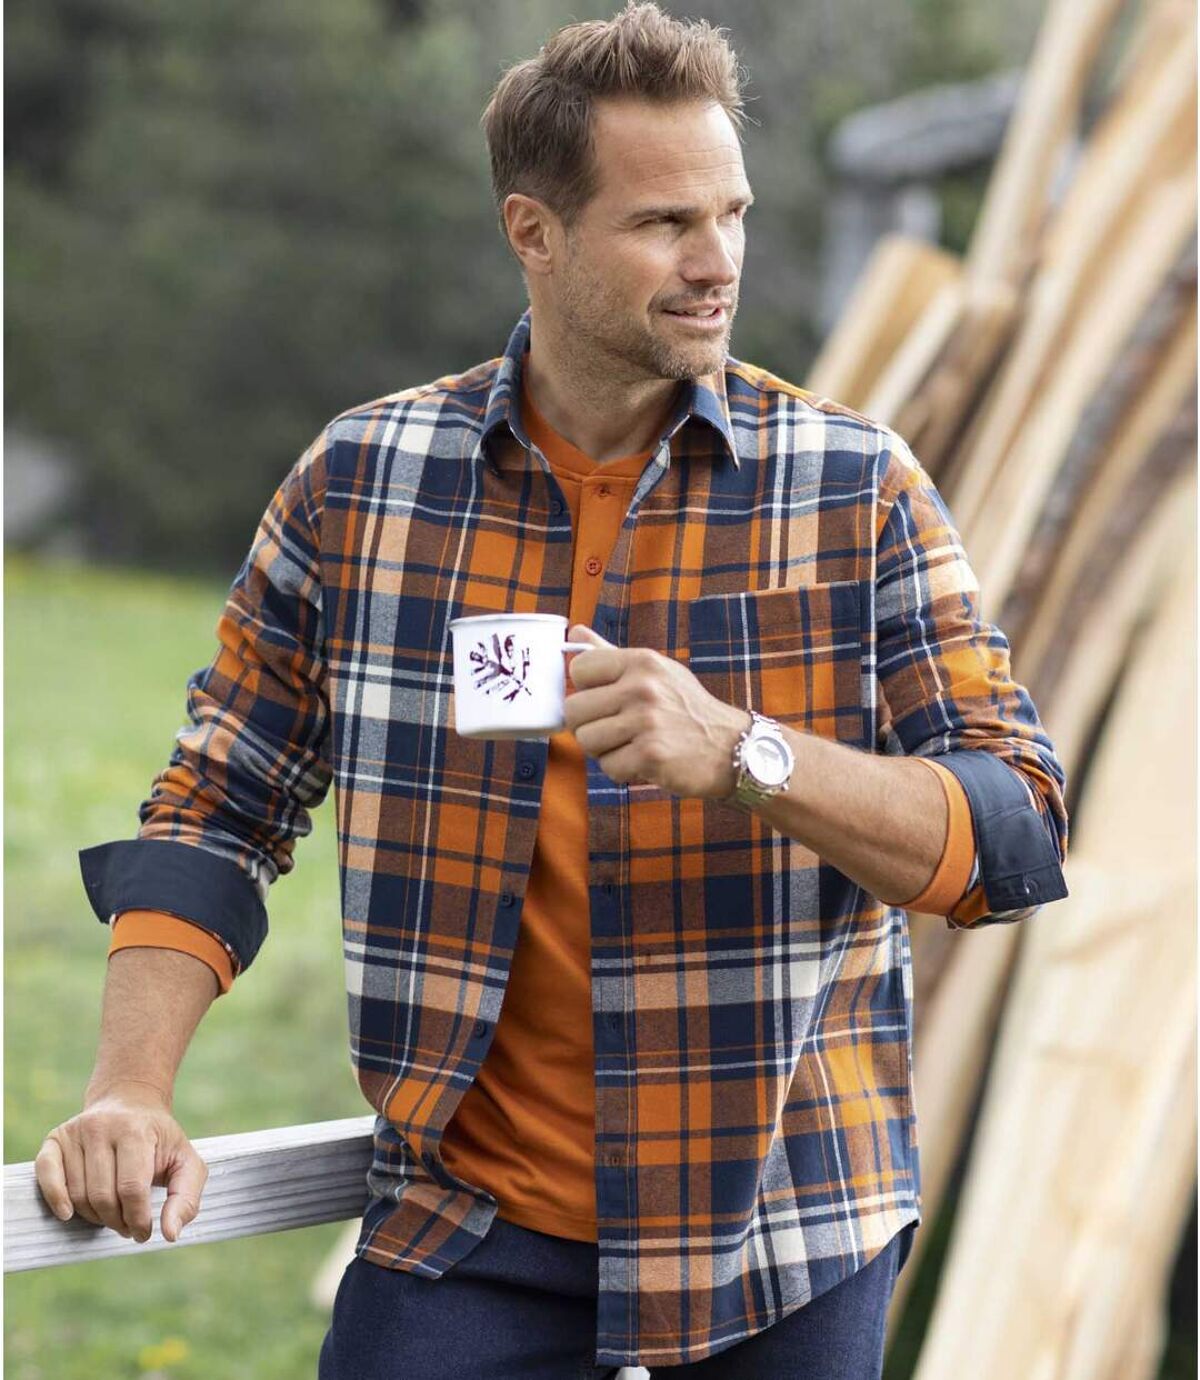 Men's Orange Checked Flannel Shirt  Atlas For Men